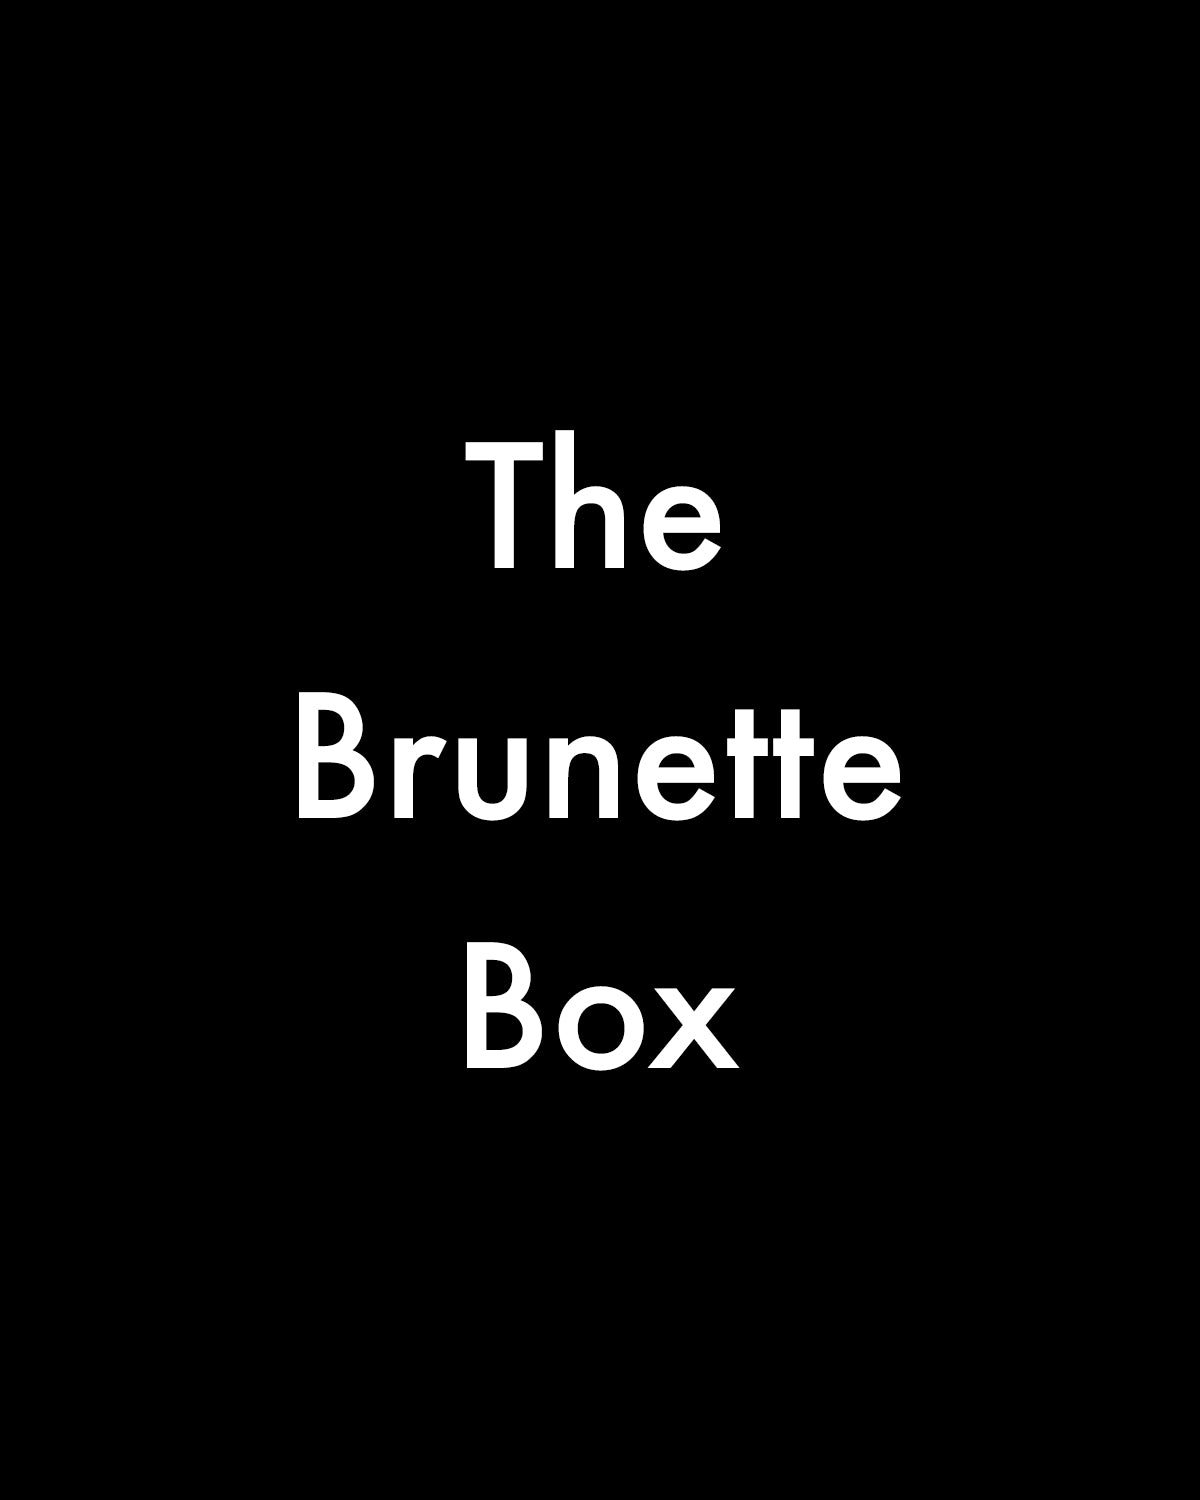 The Brunette Box